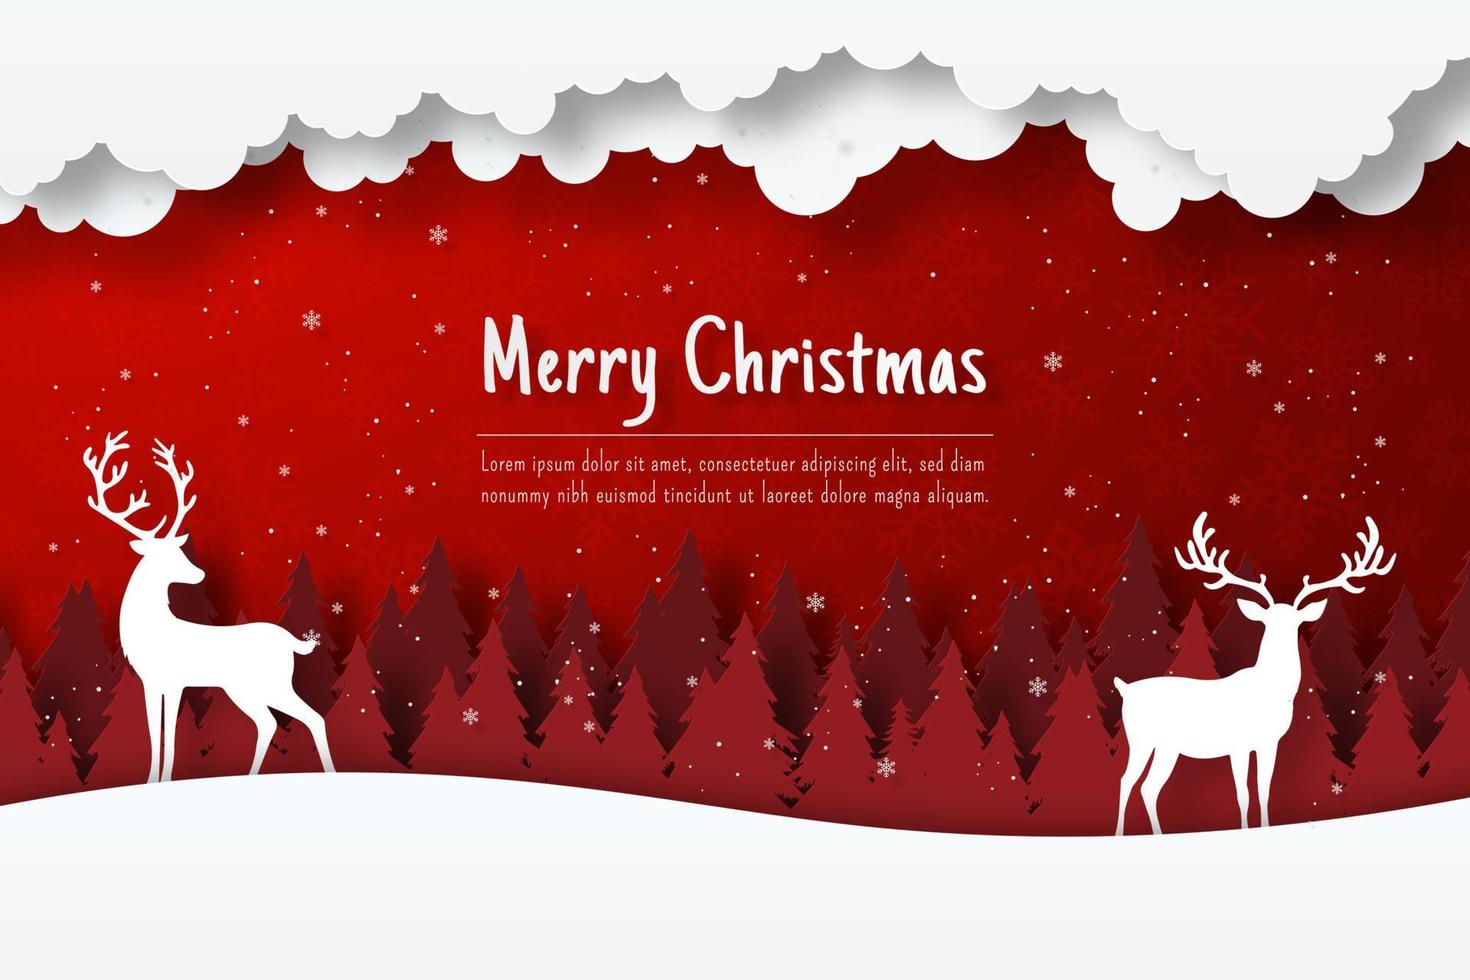 Weihnachtspostkarte von Rentier im Wald, Papierschnittillustration vektor